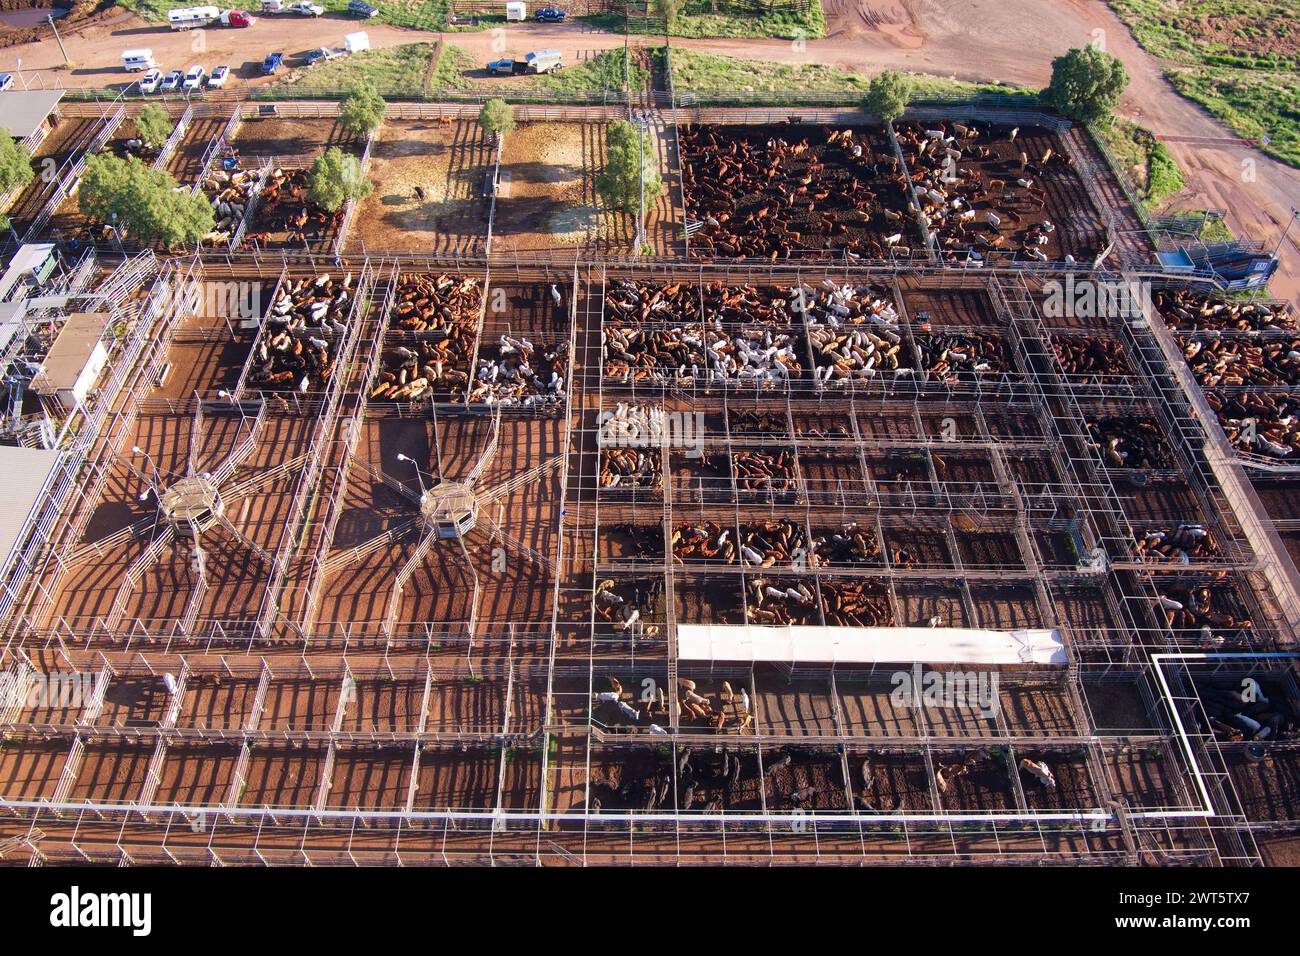 Aerial of the Roma Saleyards le plus grand centre de vente de bétail d'Australie, avec plus de 400 000 bovins passant par an. Roma Queensland Australie Banque D'Images